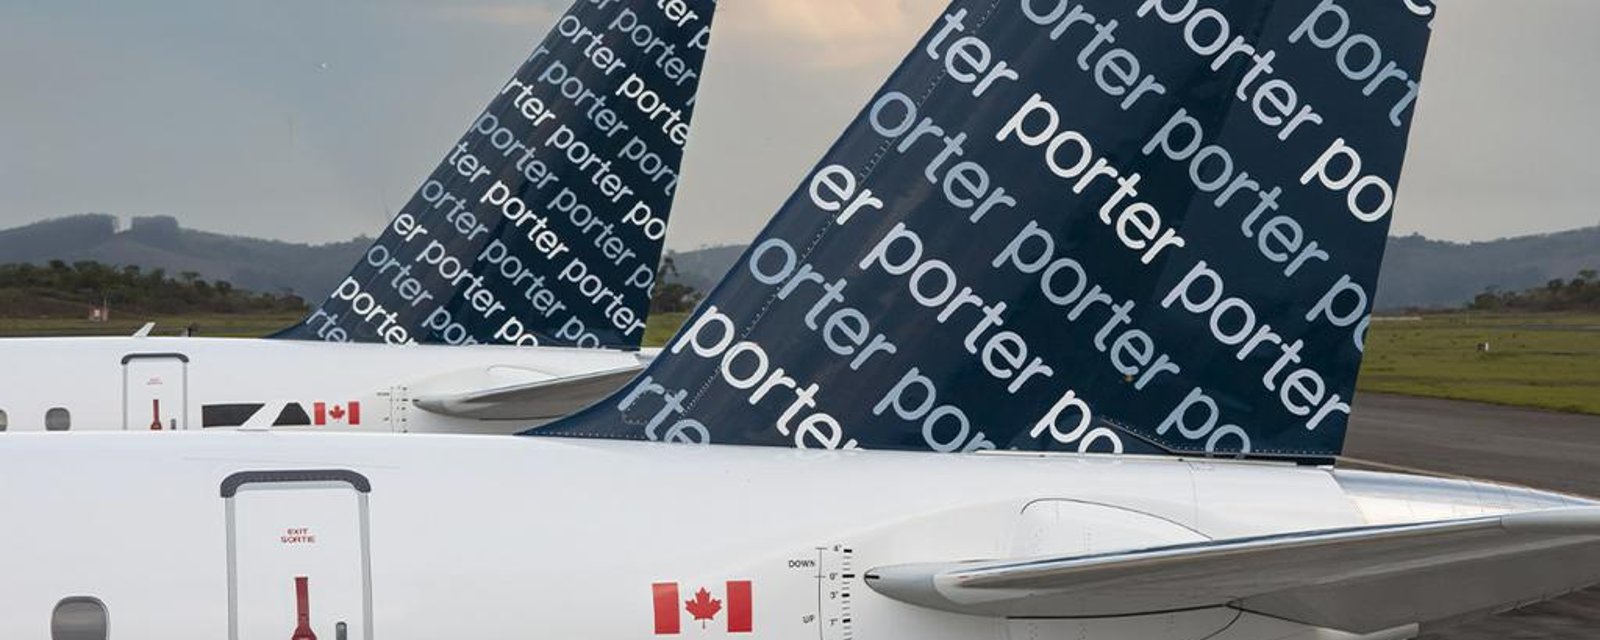 De nouveaux vols directs vers des destinations soleil sont ajoutés à l’aéroport de Montréal